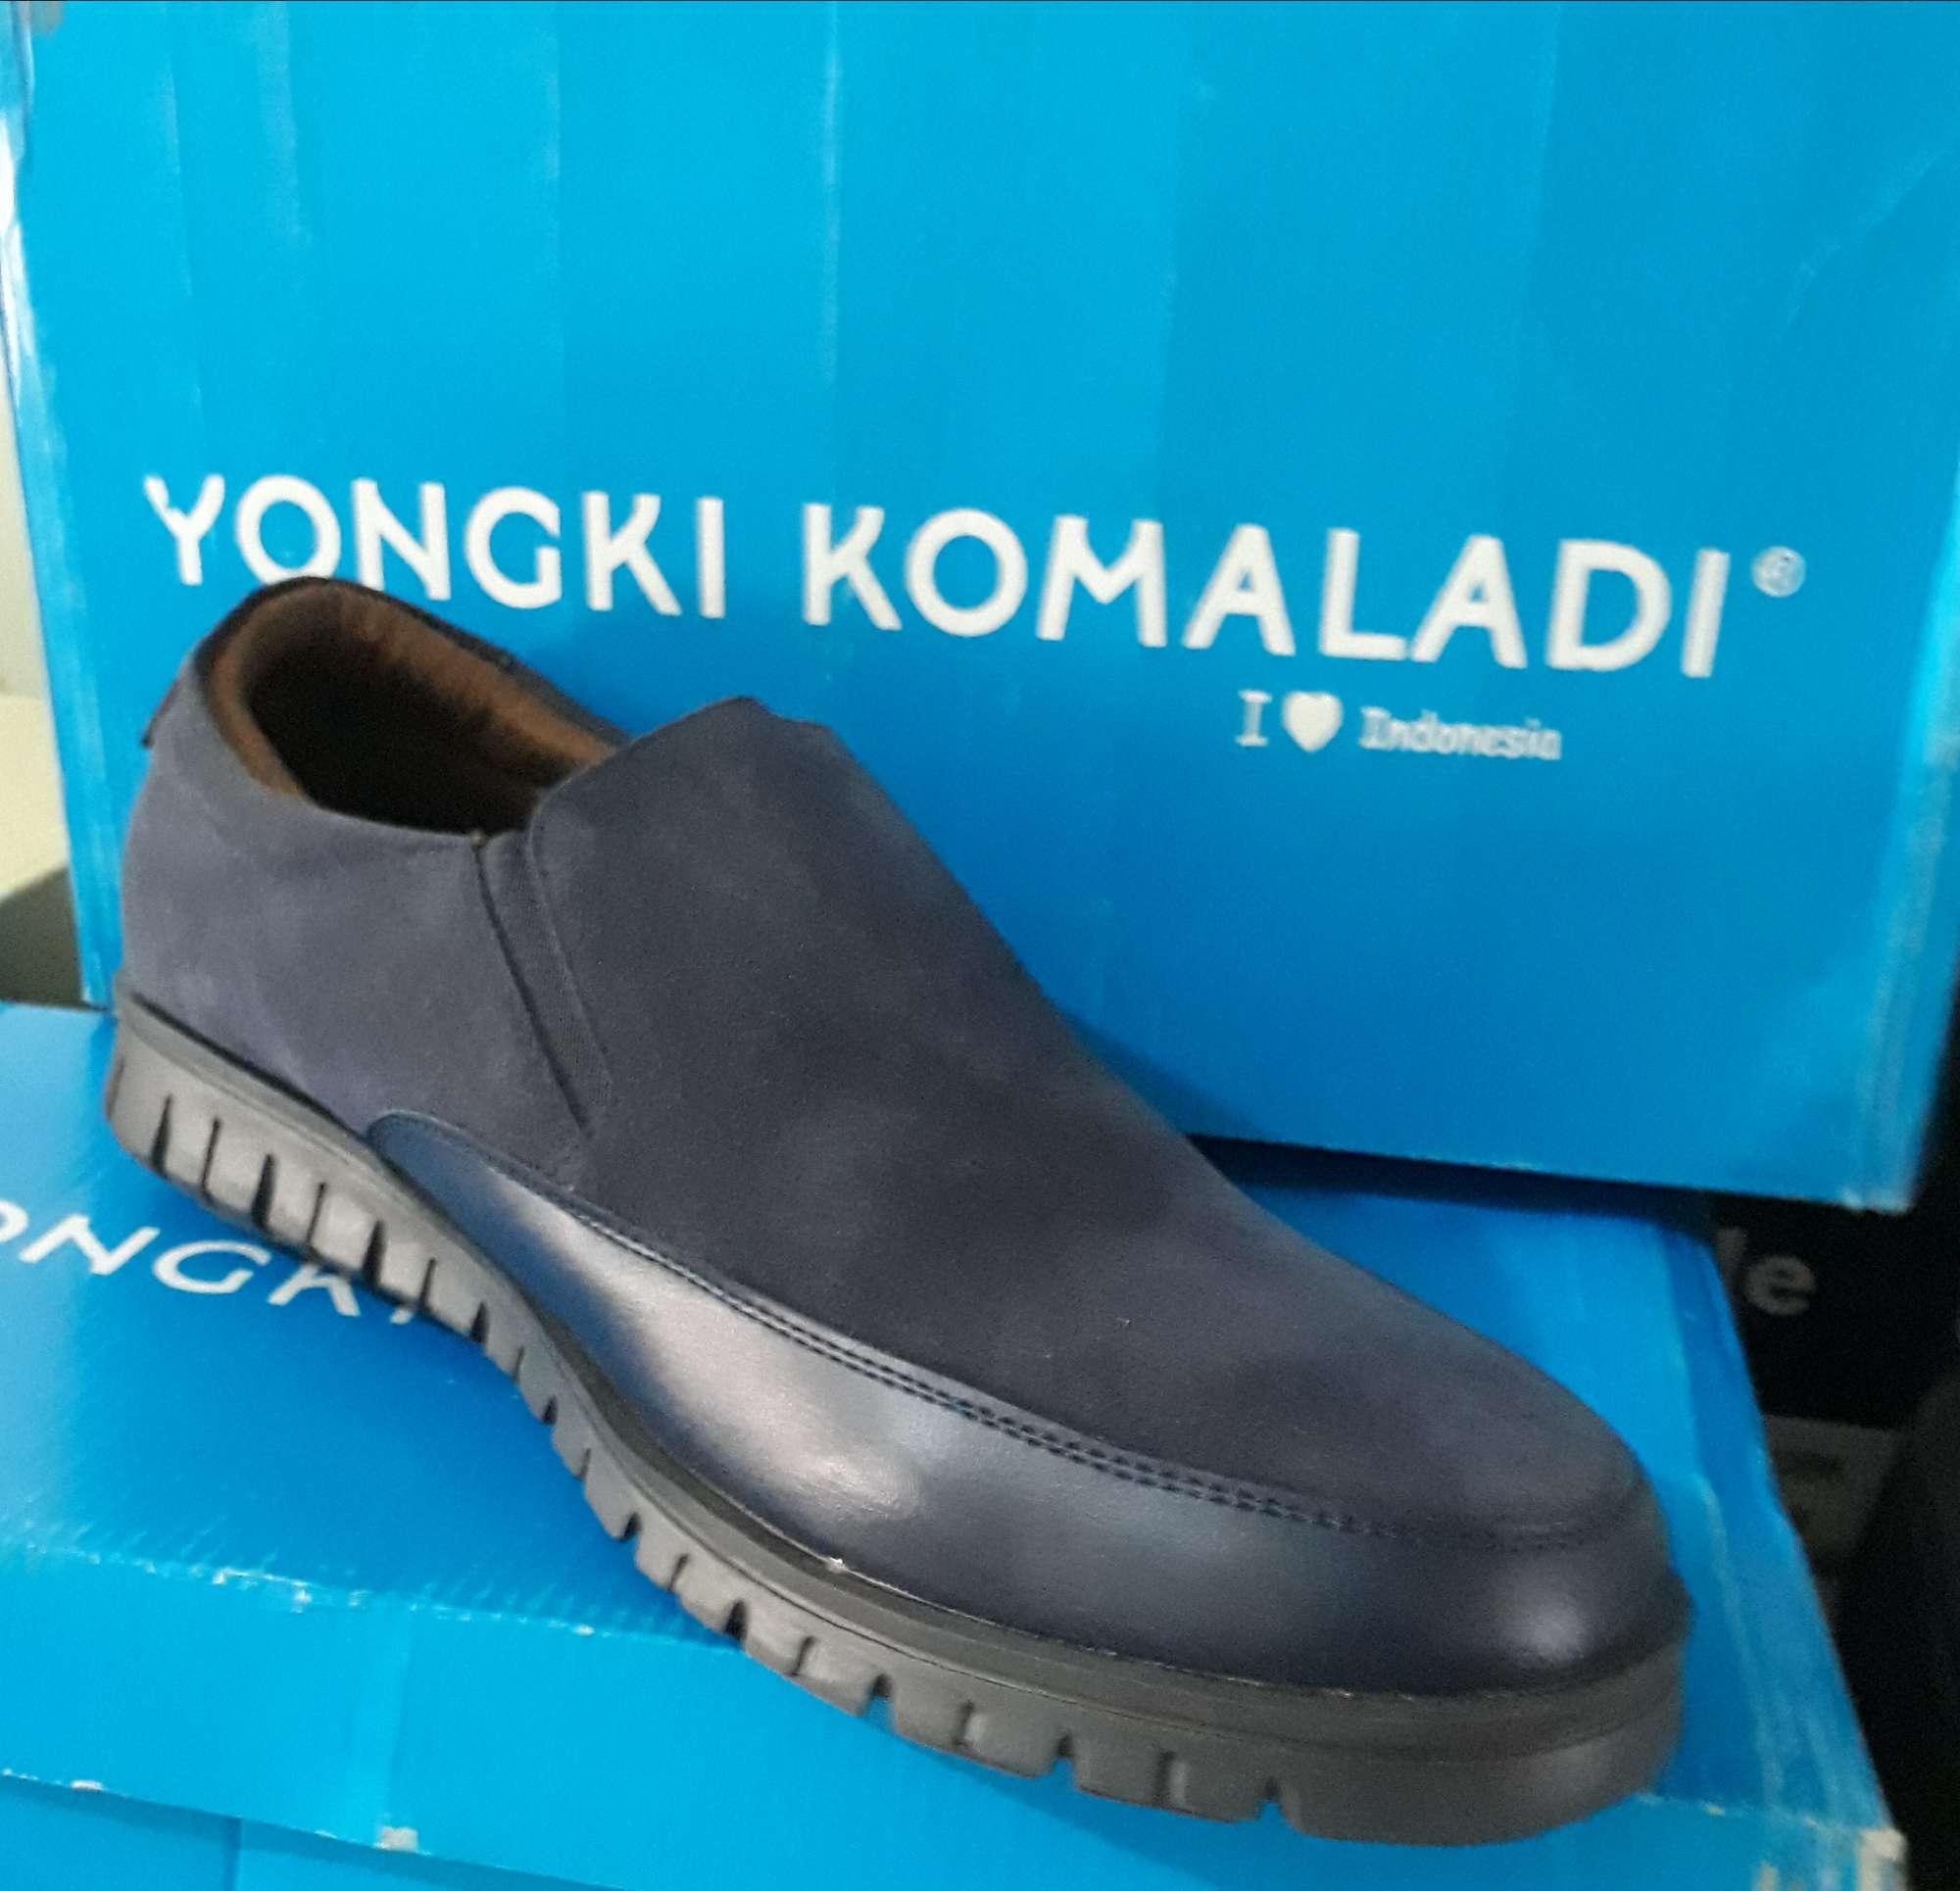 Daftar Harga  Sepatu Yongki  Komaladi  Pria  Terbaru  Daftar Ini